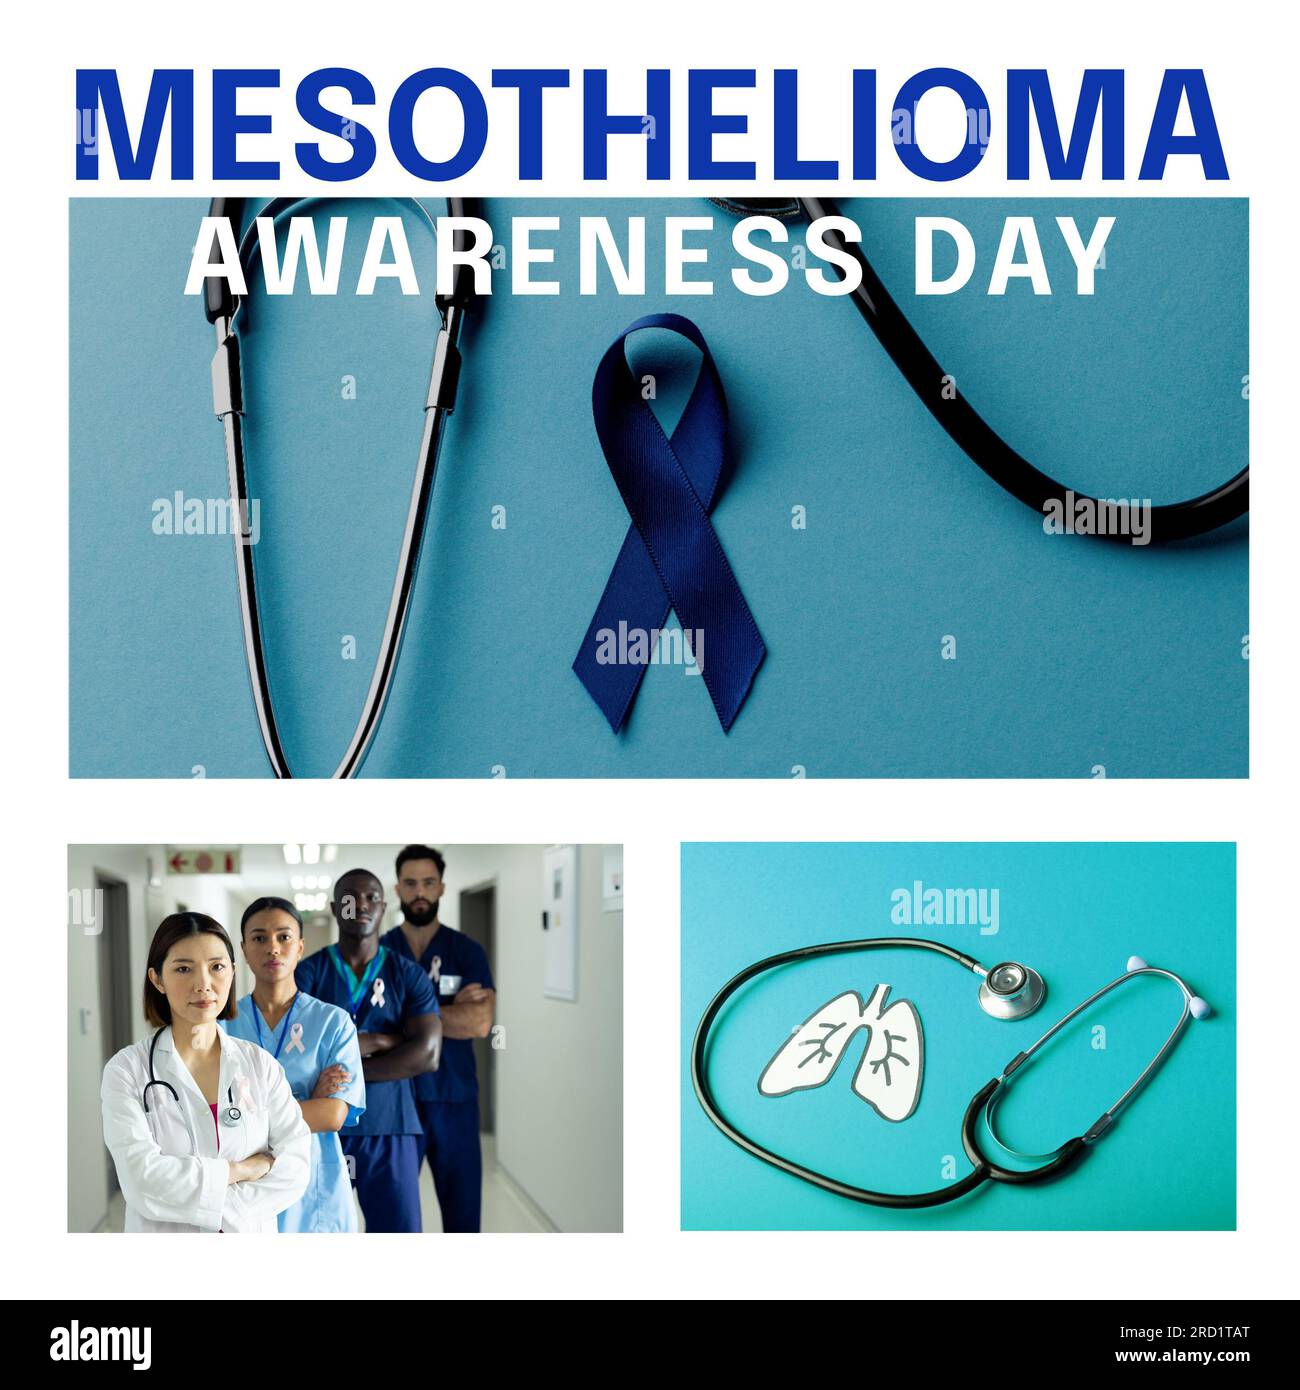 Texte de la journée de sensibilisation au mésothéliome avec ruban bleu, poumons, stéthoscope et équipe médicale diversifiée Banque D'Images